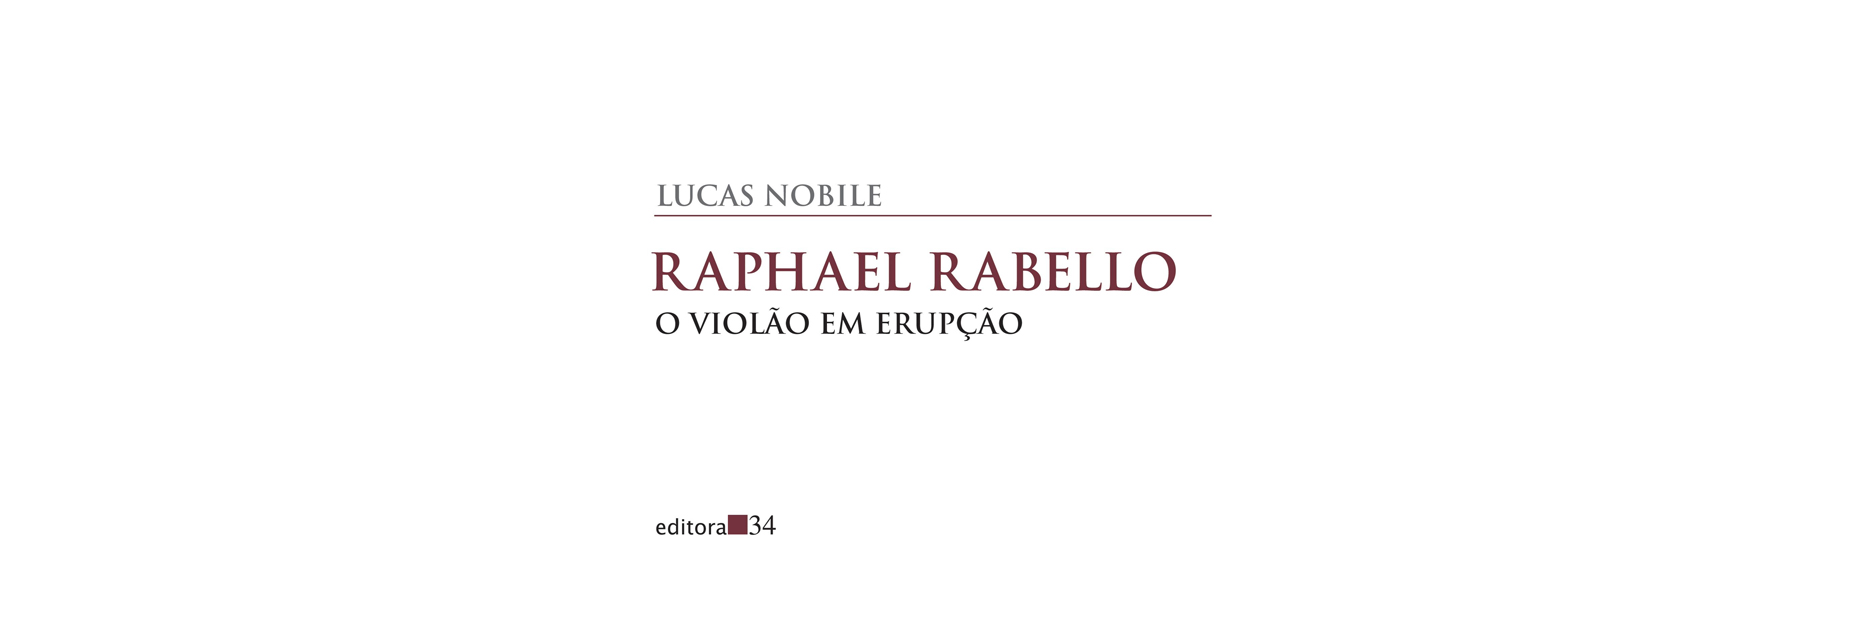 O gênio do violão Raphael Rabello em biografia candente de Lucas Nóbile